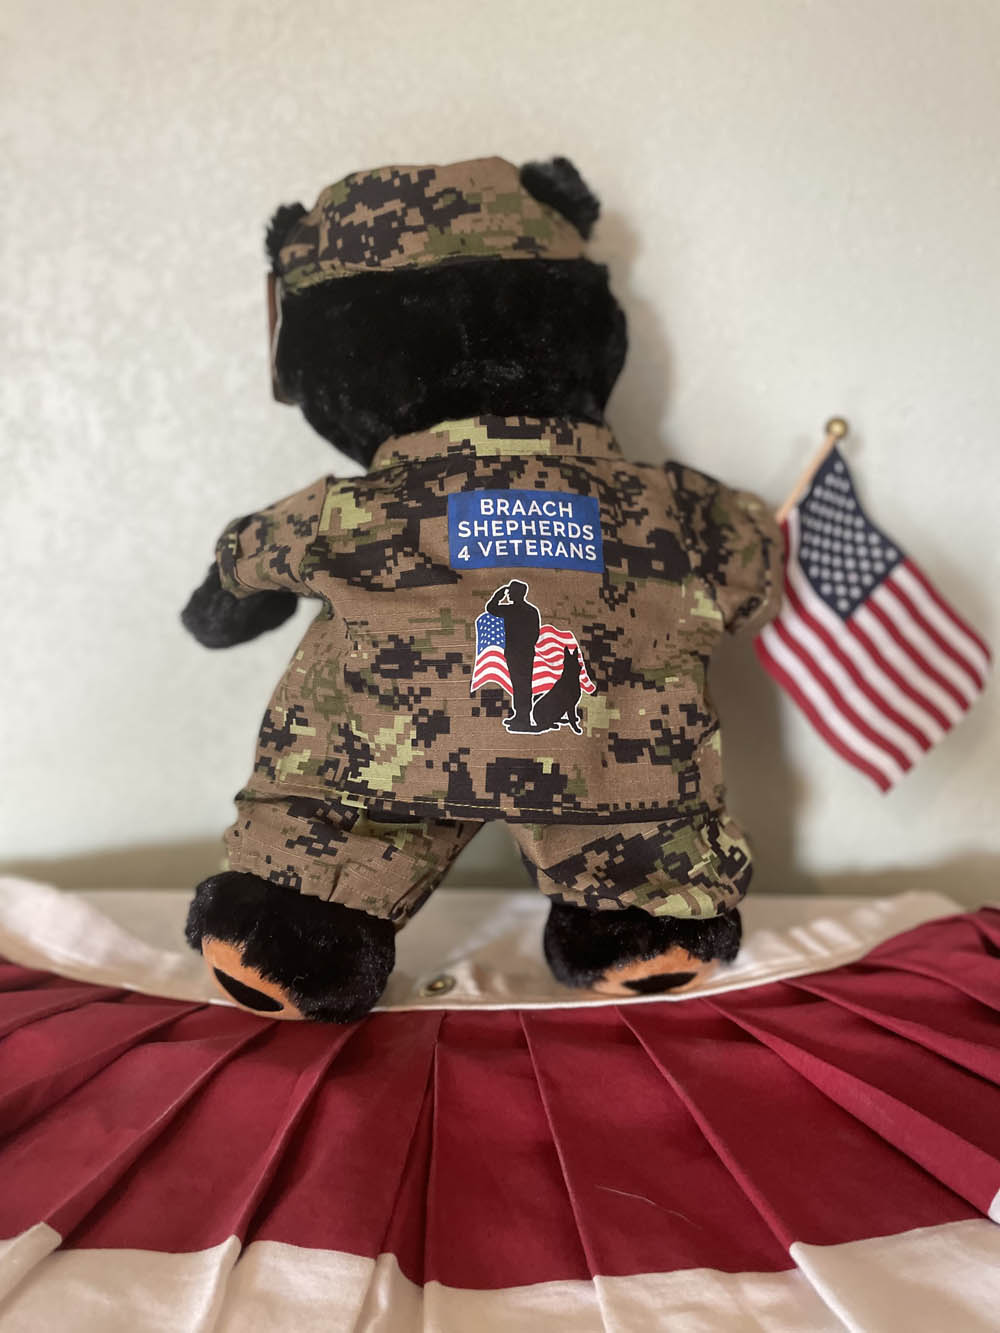 Stuffed Soldier Teddy Bear - Braach Shepherds 4 Veterans